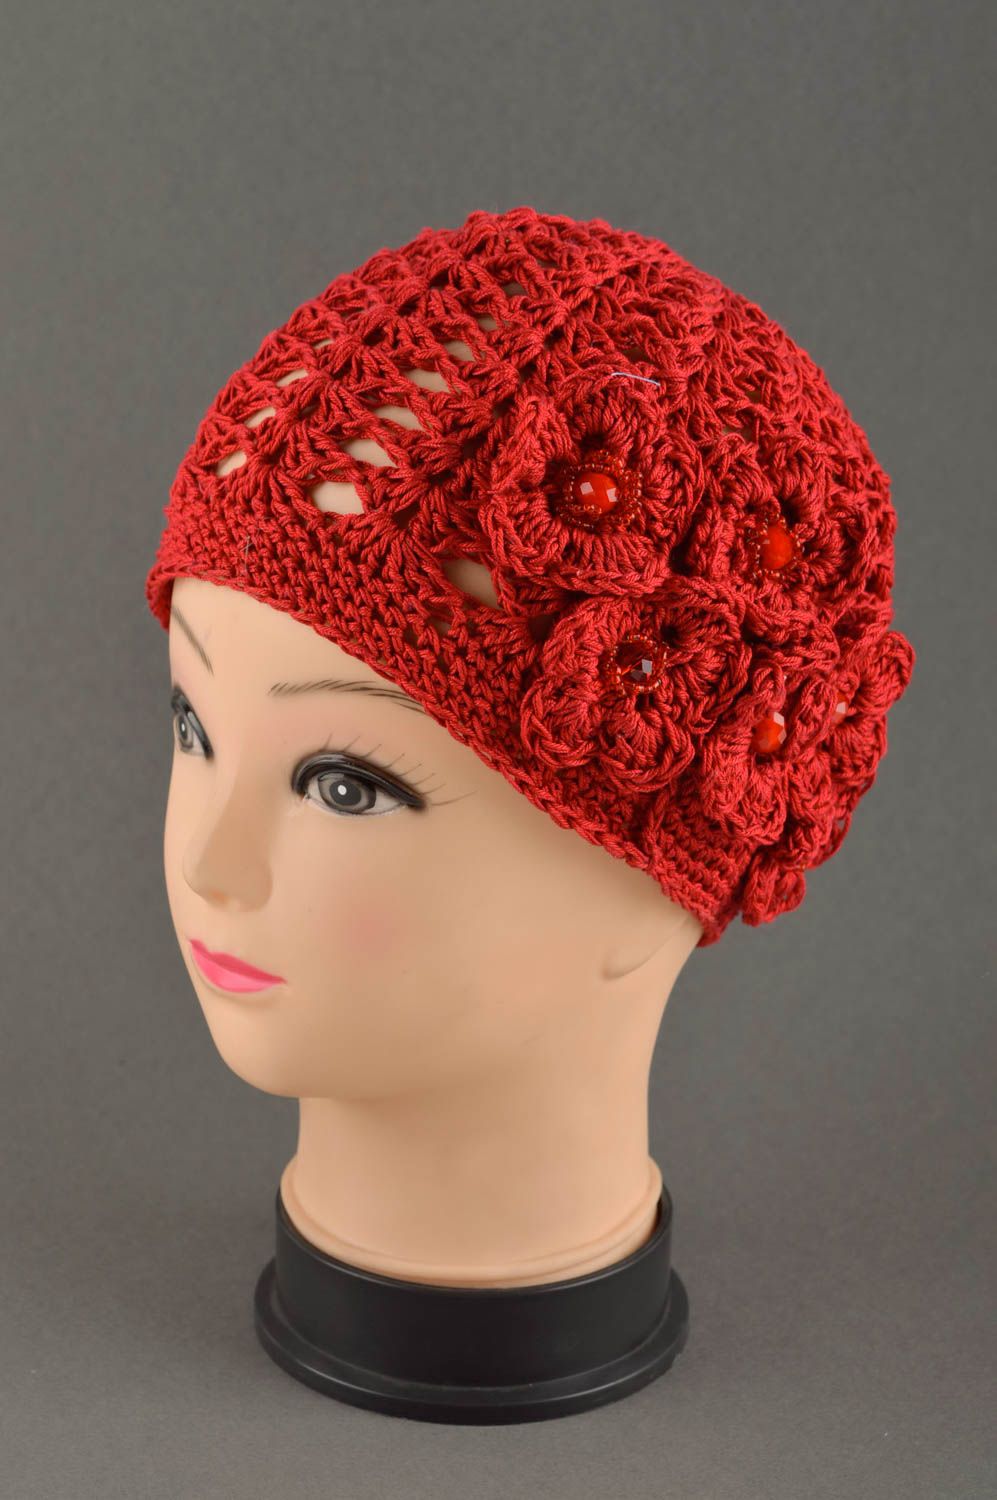 Handmade hat for girls warm woolen hat for winter designer baby hat gift ideas photo 1